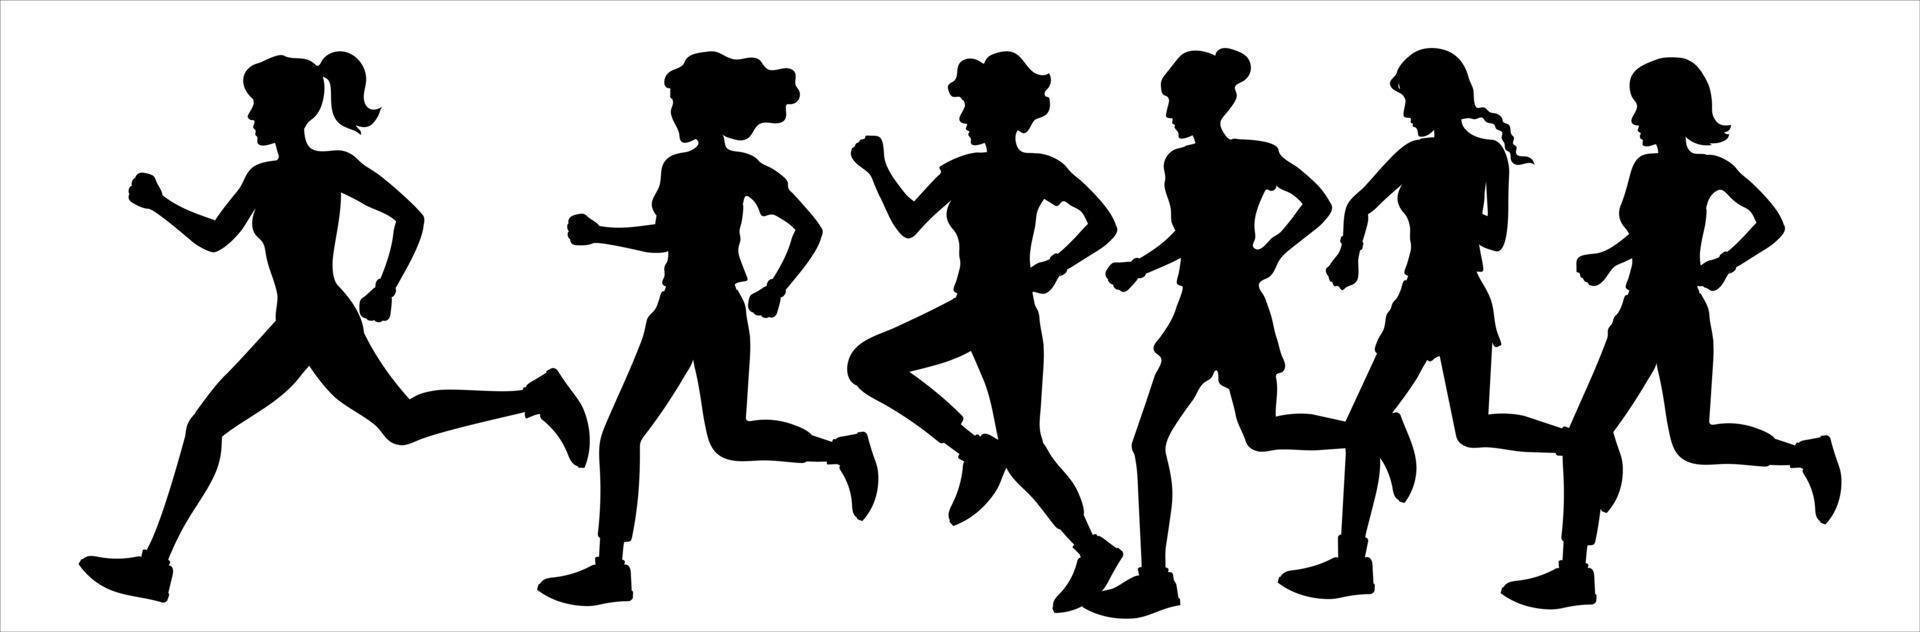 ragazze e donne corrono in una maratona, fanno jogging. sagome nere su sfondo bianco. illustrazione di sport e stile di vita sano. vettore